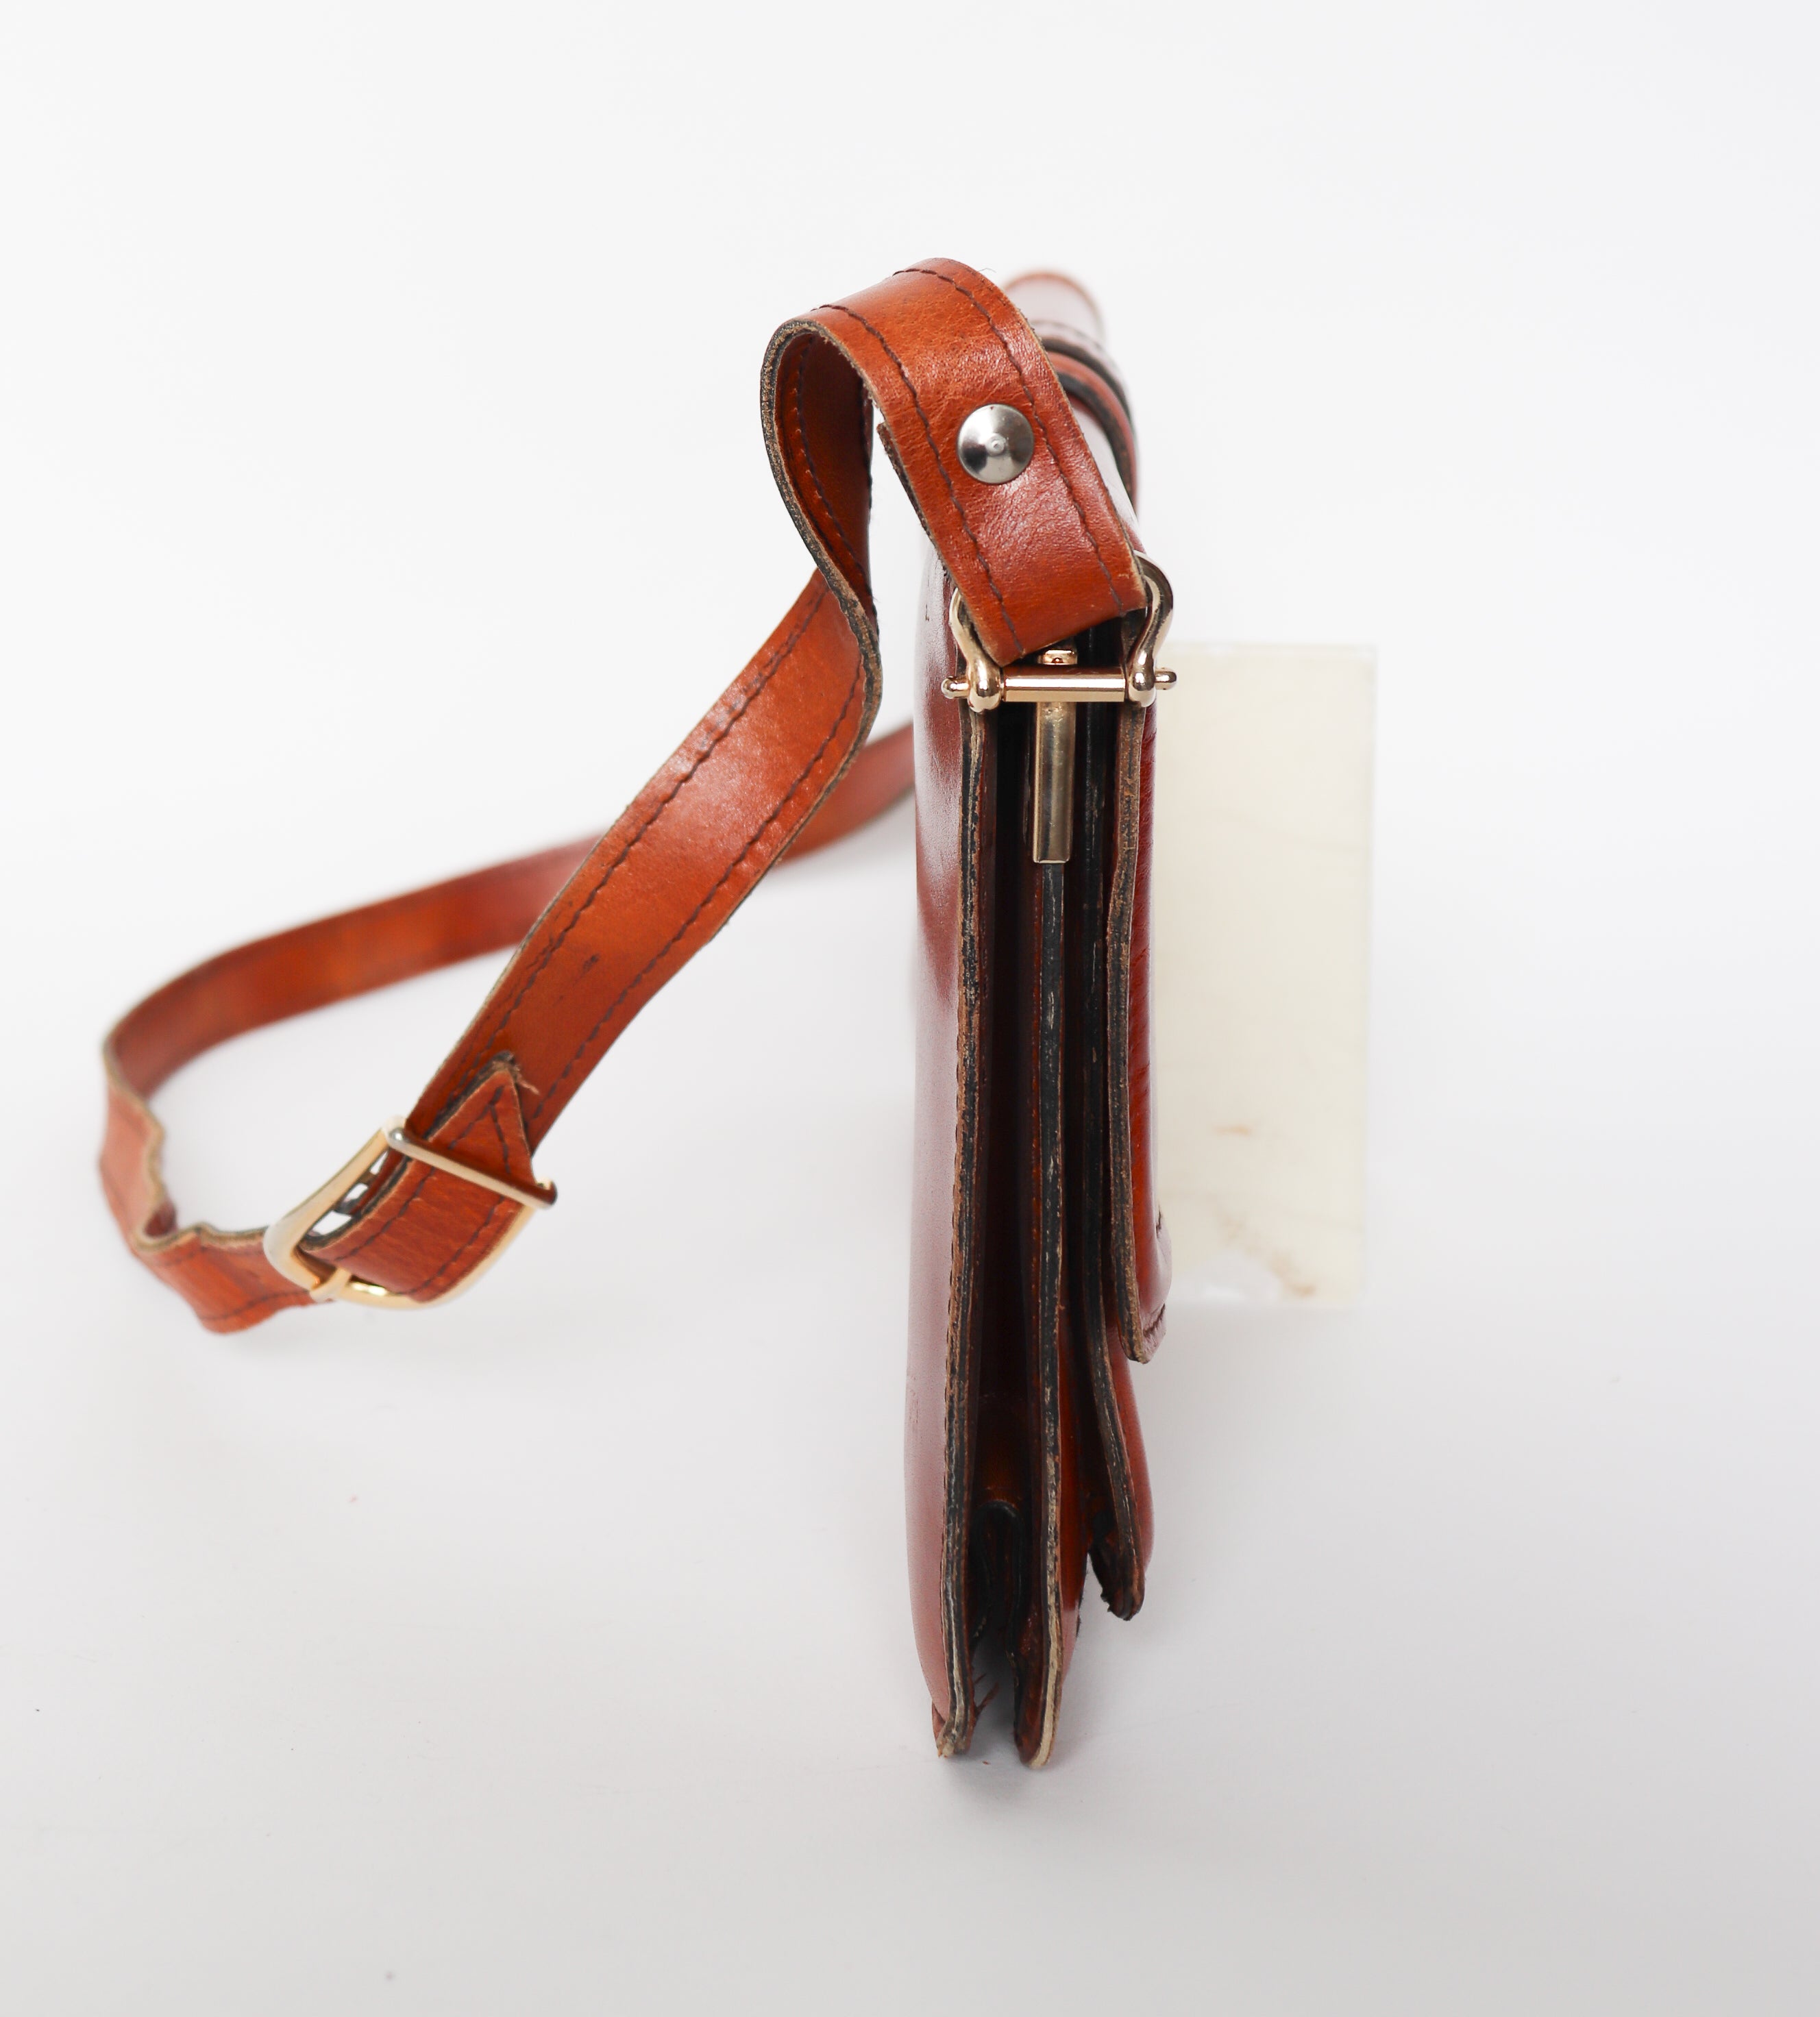 Vintage Satchel Bag / Shoulder Bag - 1970s - Tan Brown Leather - Medium